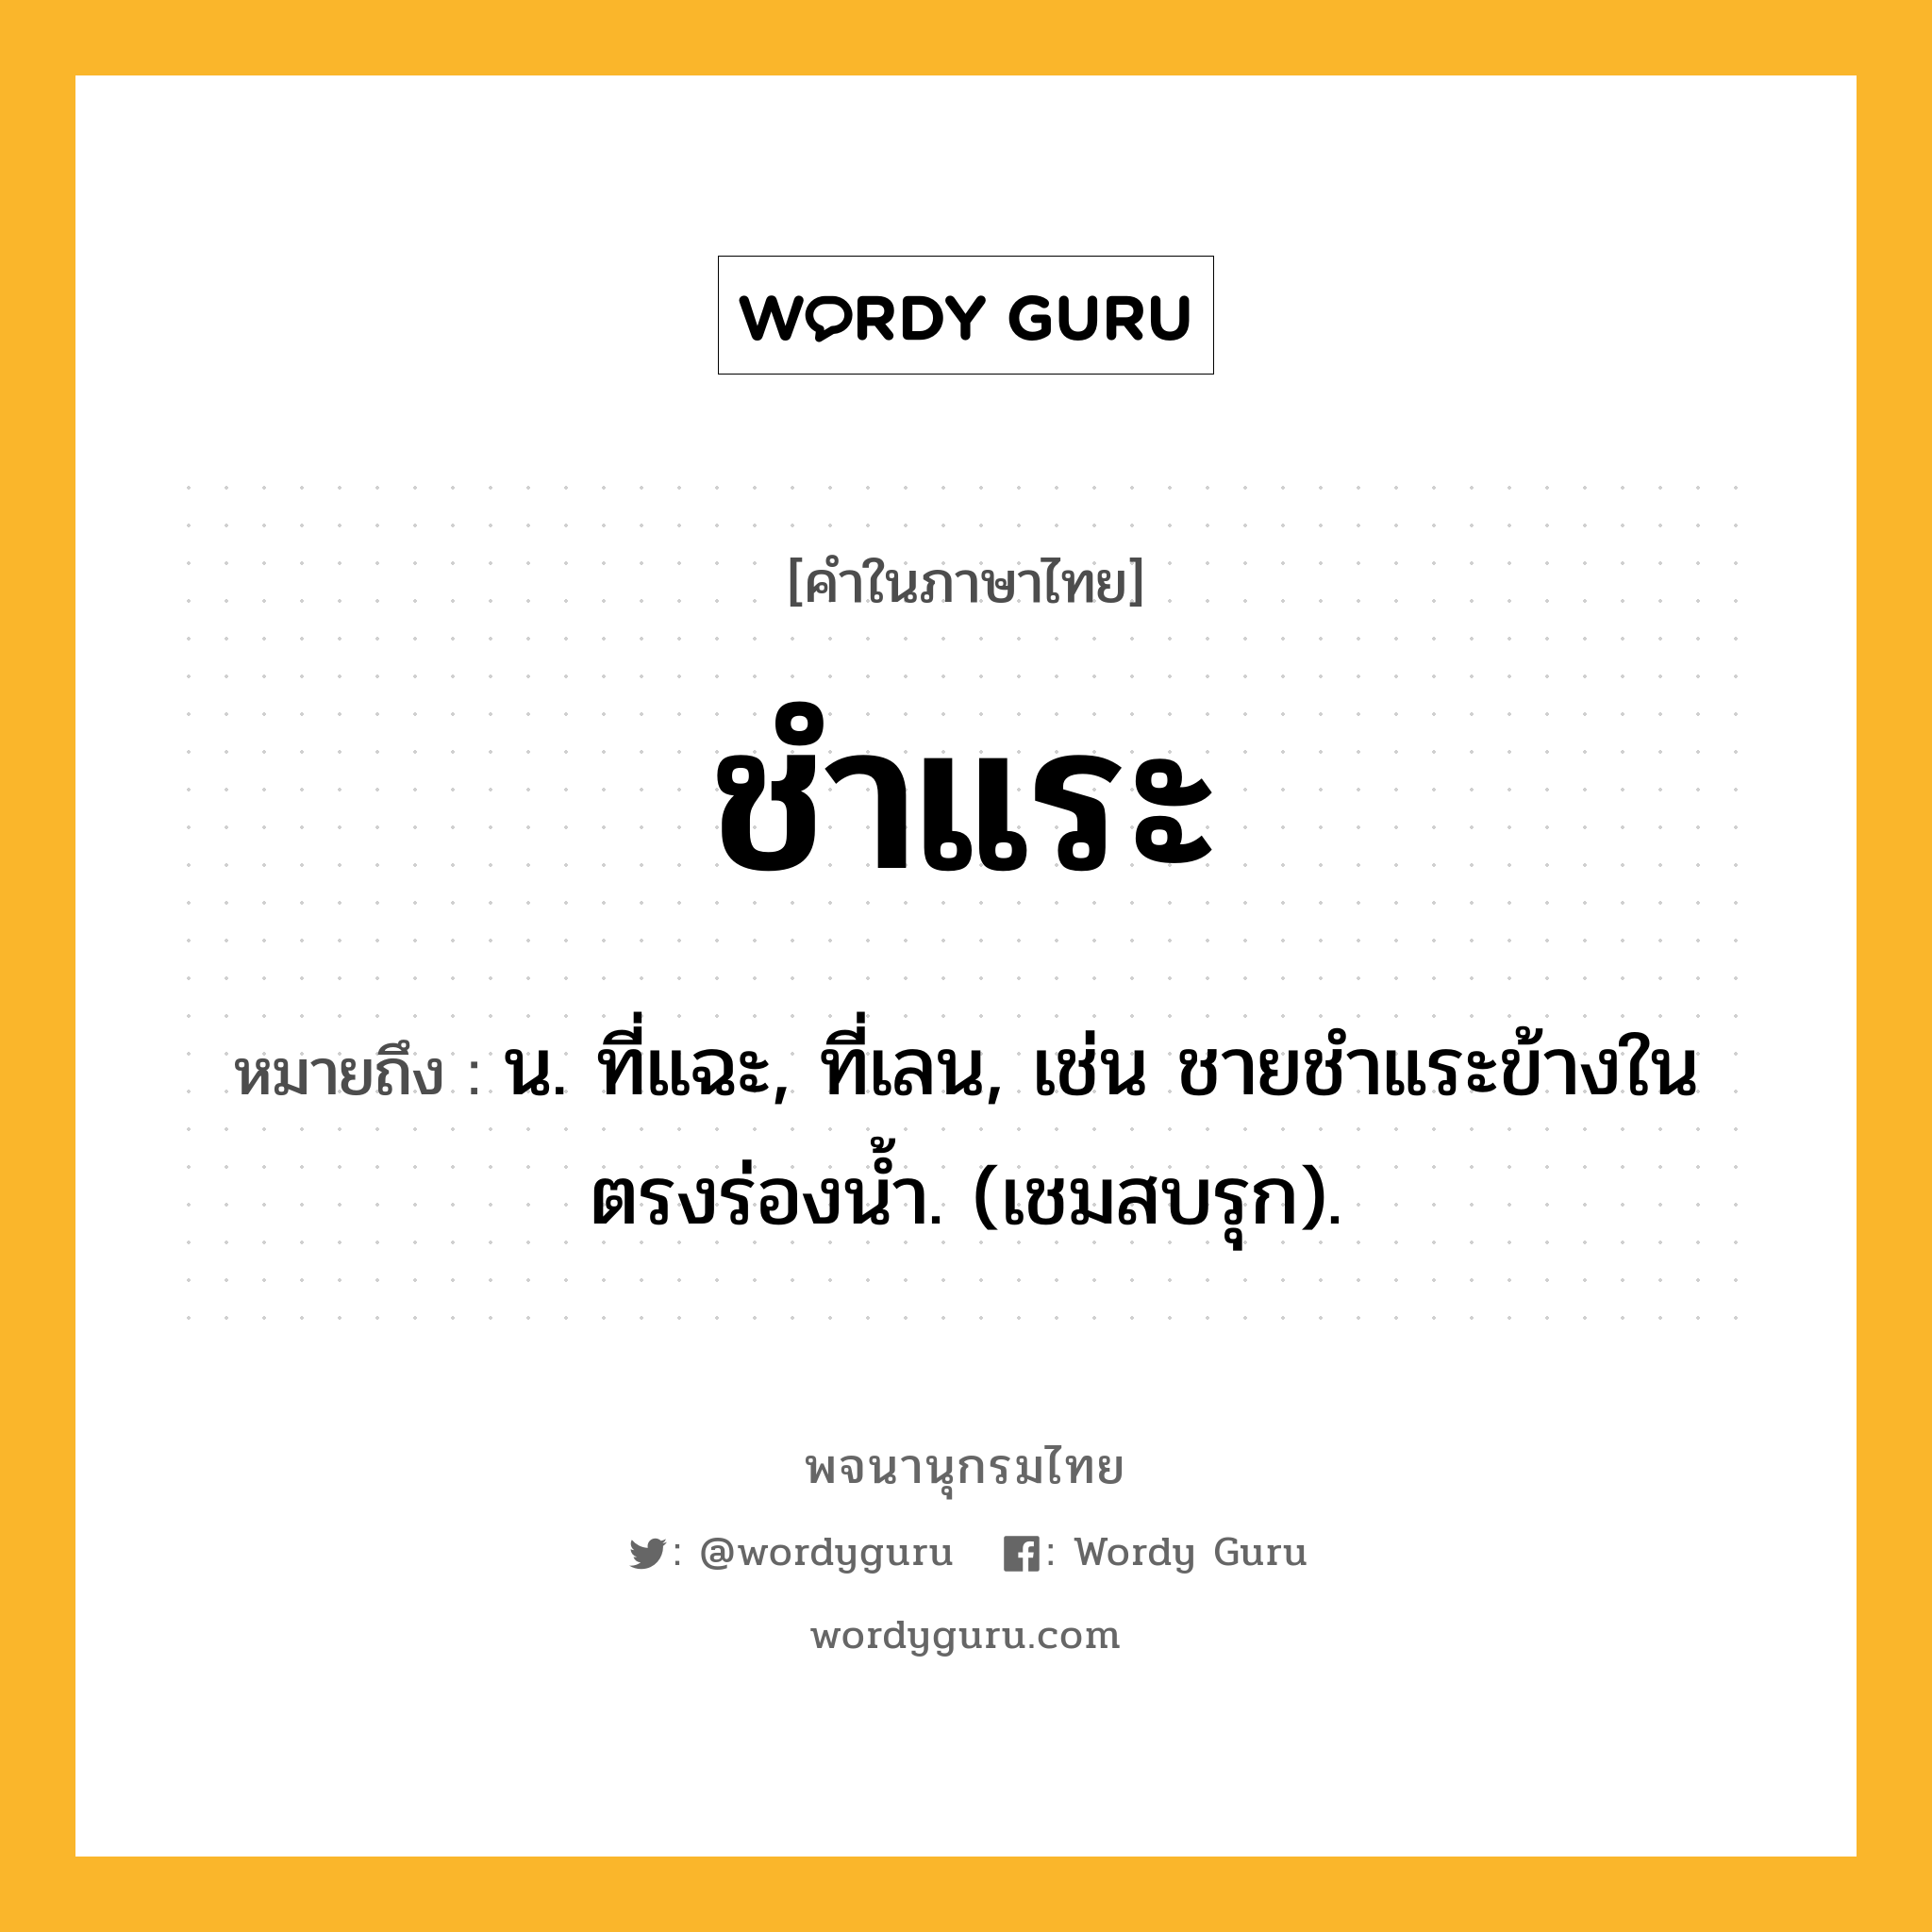 ชำแระ หมายถึงอะไร?, คำในภาษาไทย ชำแระ หมายถึง น. ที่แฉะ, ที่เลน, เช่น ชายชําแระข้างในตรงร่องนํ้า. (เชมสบรุก).